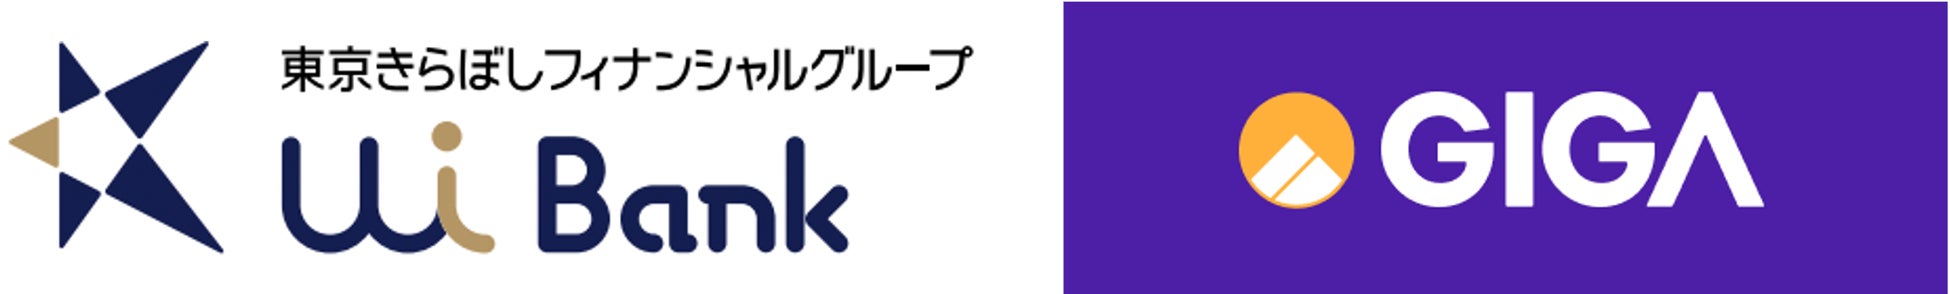 多言語モバイル金融サービス「GIG-A（ギガー）」東京きらぼしフィナンシャルグループのUI銀行とAPI連携で提携のサブ画像1